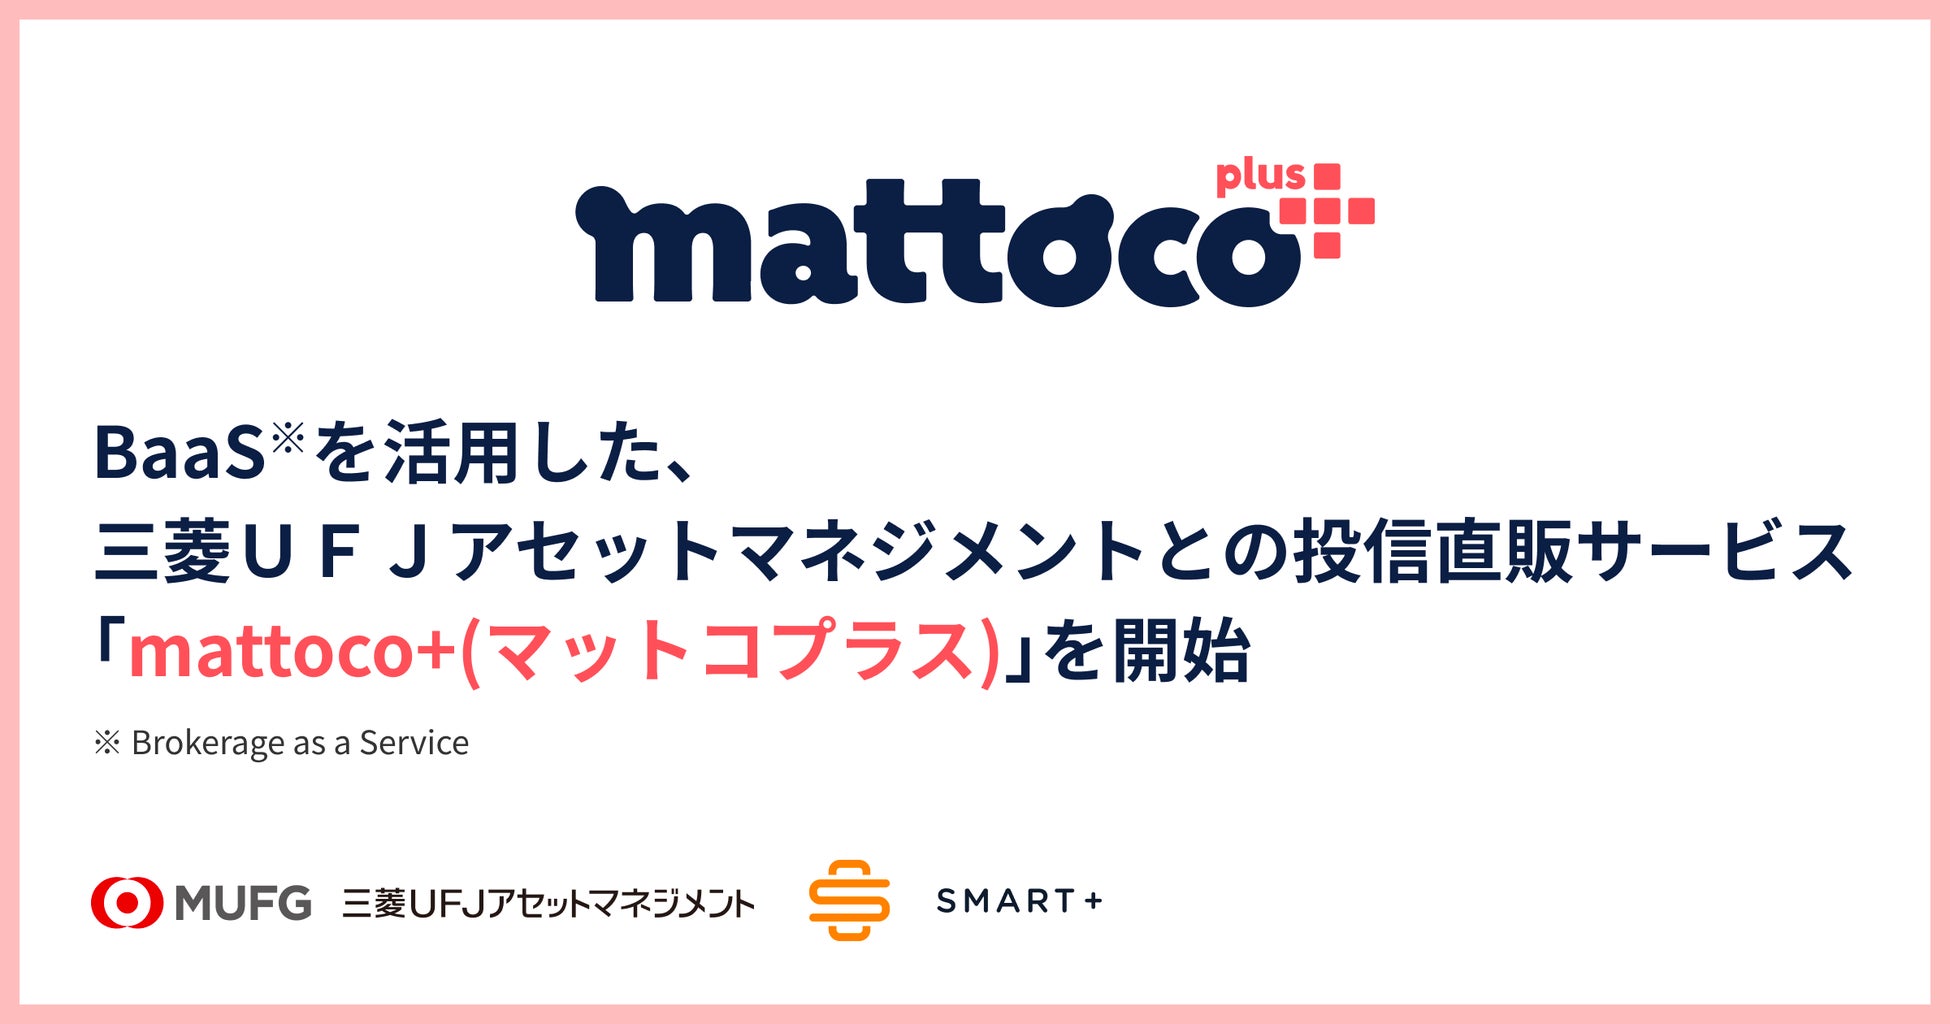 スマートプラスの証券ビジネスプラットフォーム「BaaS」を活用した、三菱ＵＦＪアセットマネジメントとの直販サービス「mattoco+(マットコプラス)」の開始について